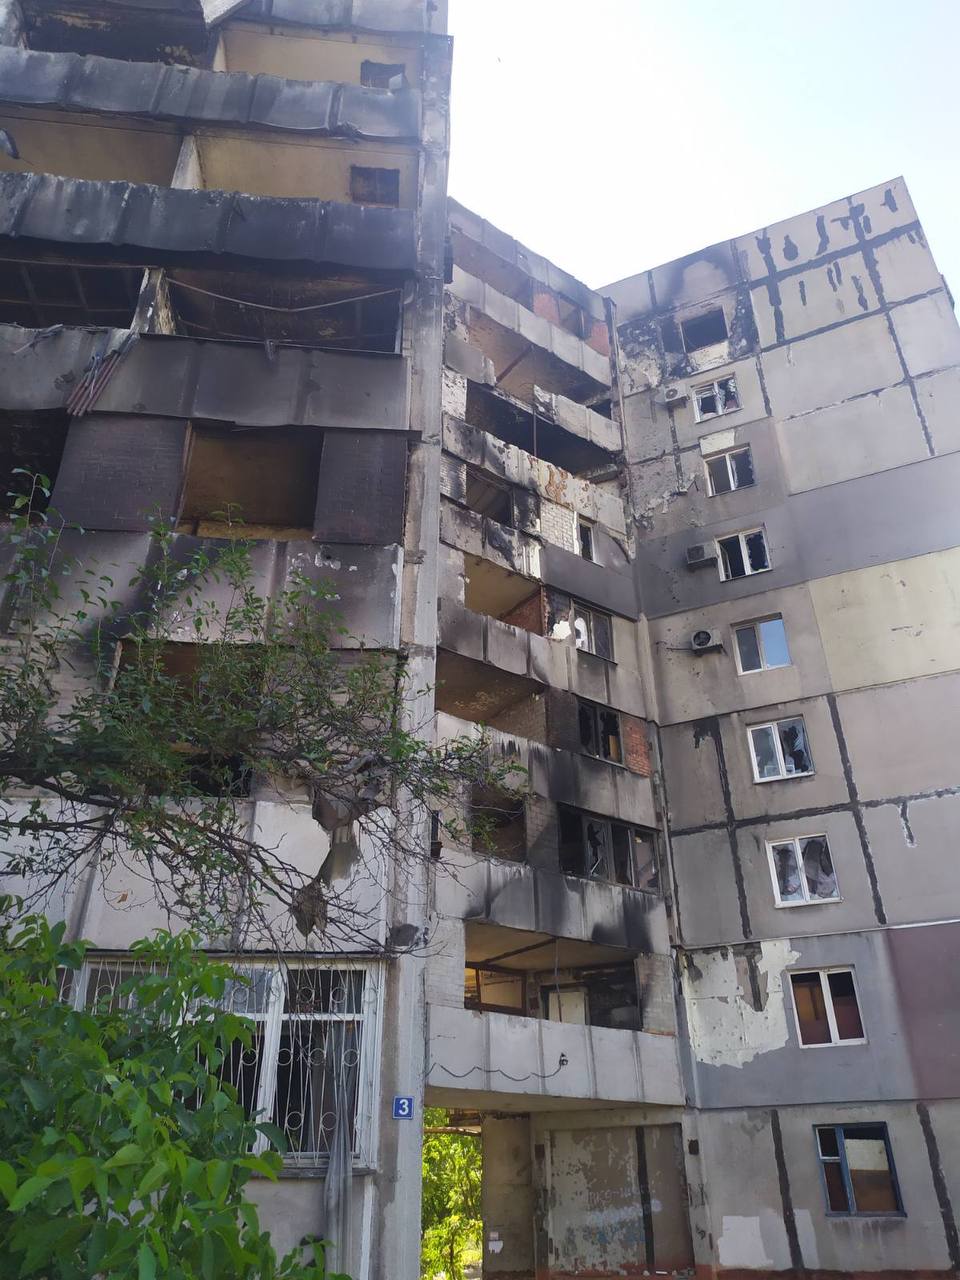 В т.н. “ДНР” назвали дома, которые в Мариуполе снесут первыми (адреса, фото, видео) 4